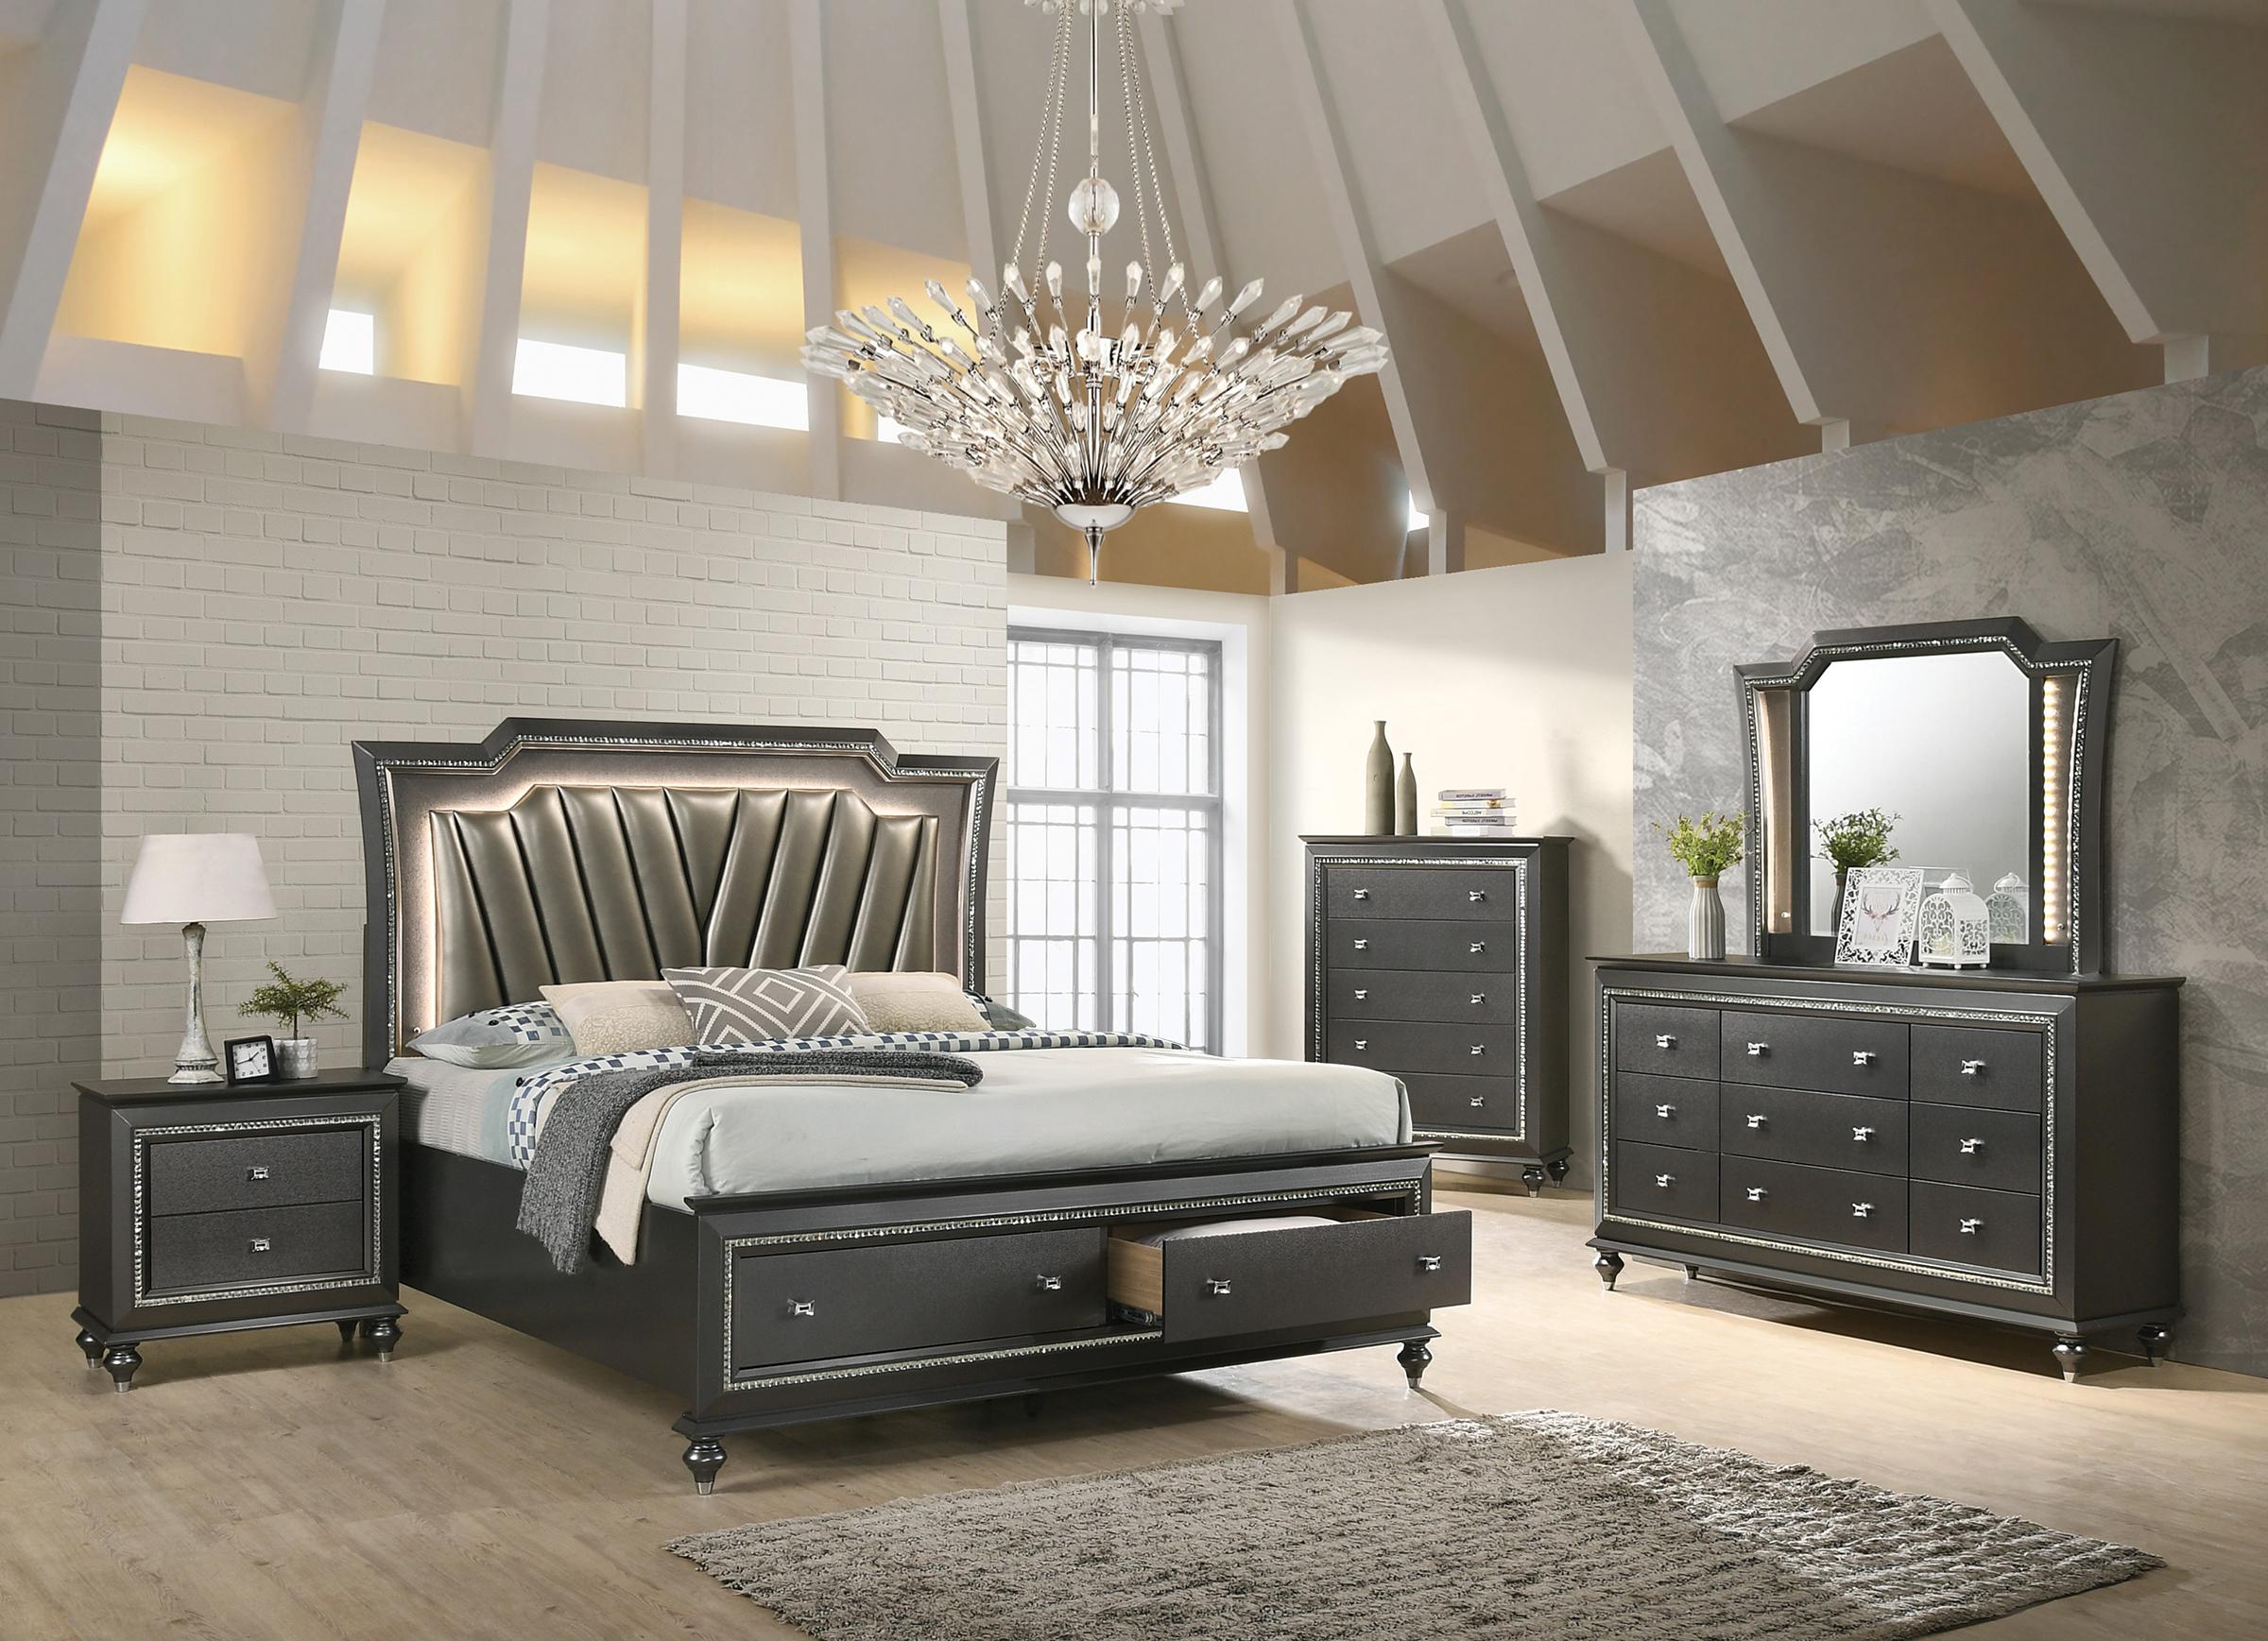 

    
Acme Furniture Kaitlyn Storage Bed Metallic/Gray Kaitlyn-27277EK
